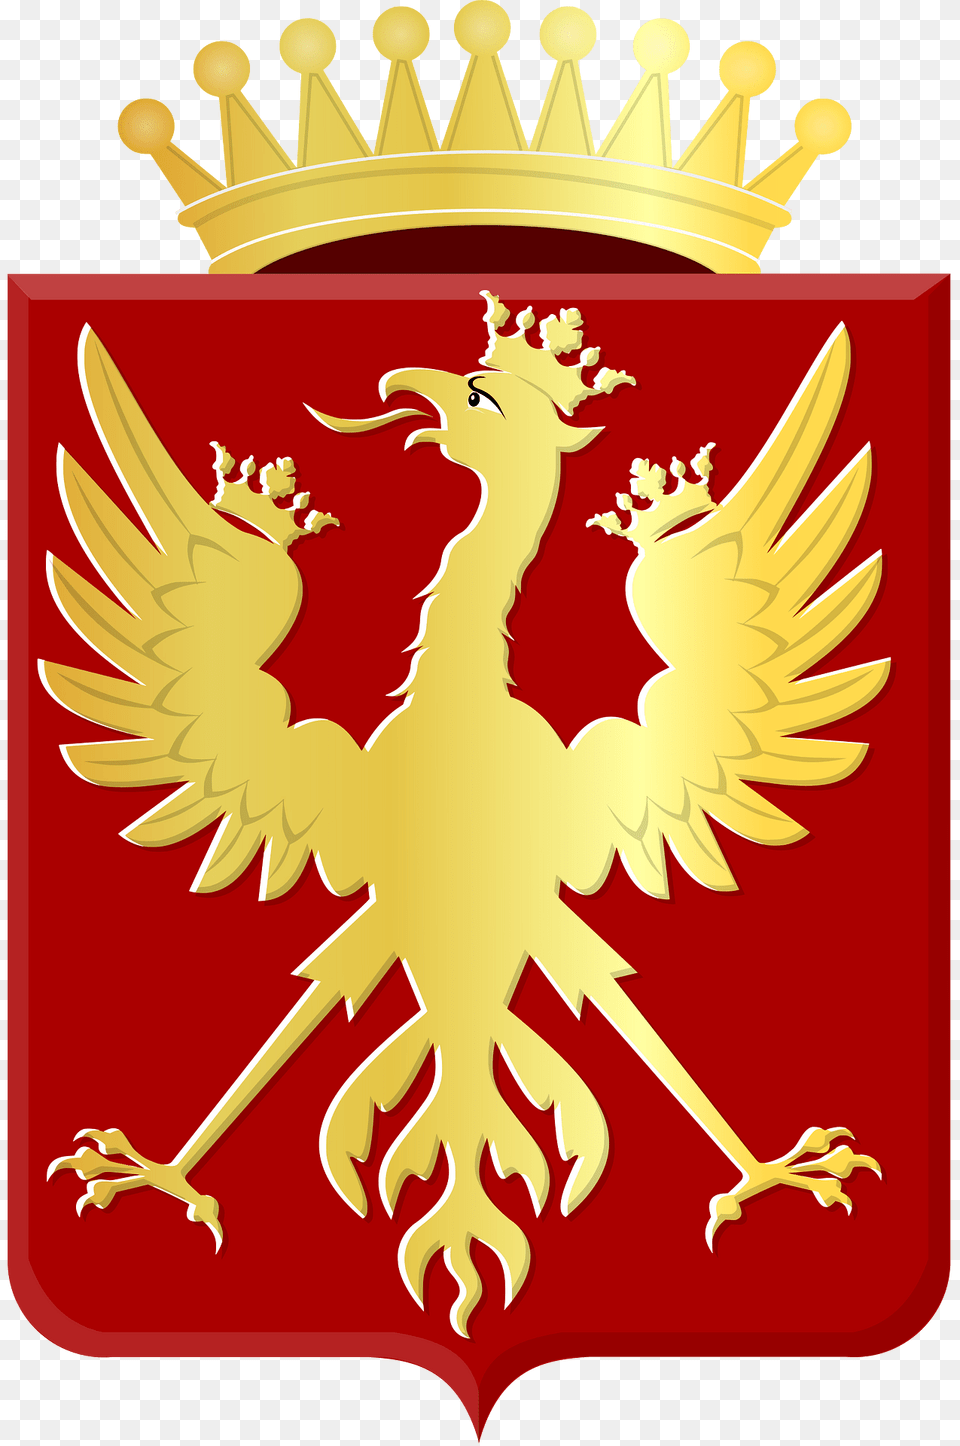 Rietberg Wapen Clipart, Emblem, Symbol, Animal, Fish Png